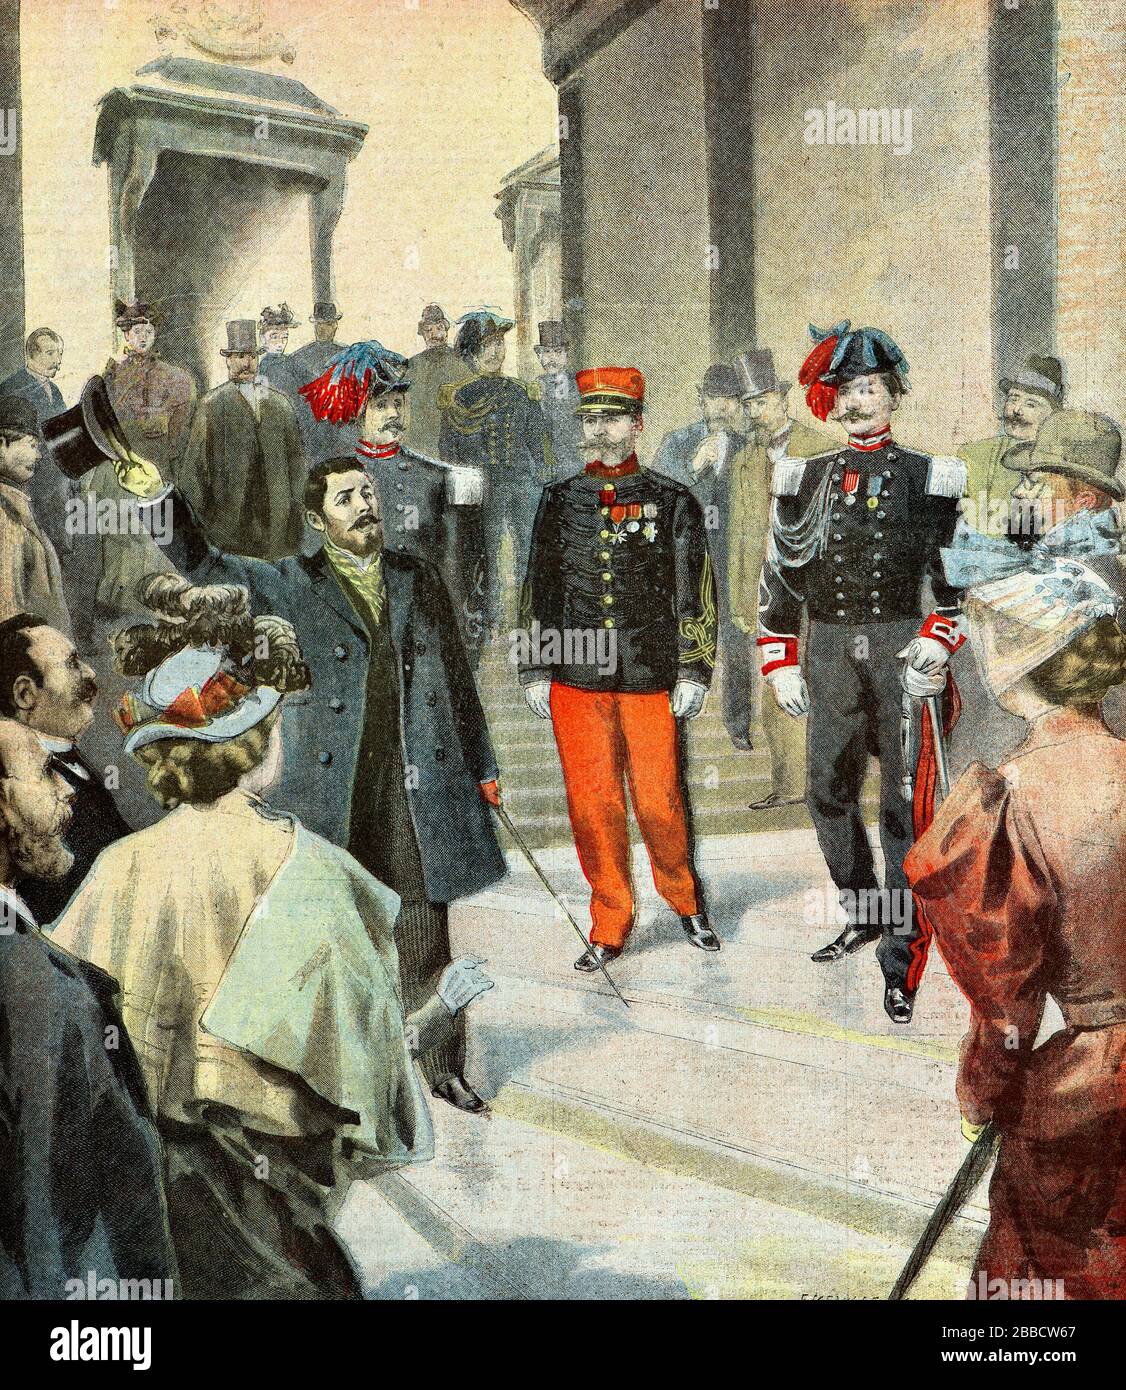 Incisione - il capitano Romani lascia la corte di Genova nel 1895, ingiustamente accusato di spionaggio - Collezione privata Foto Stock